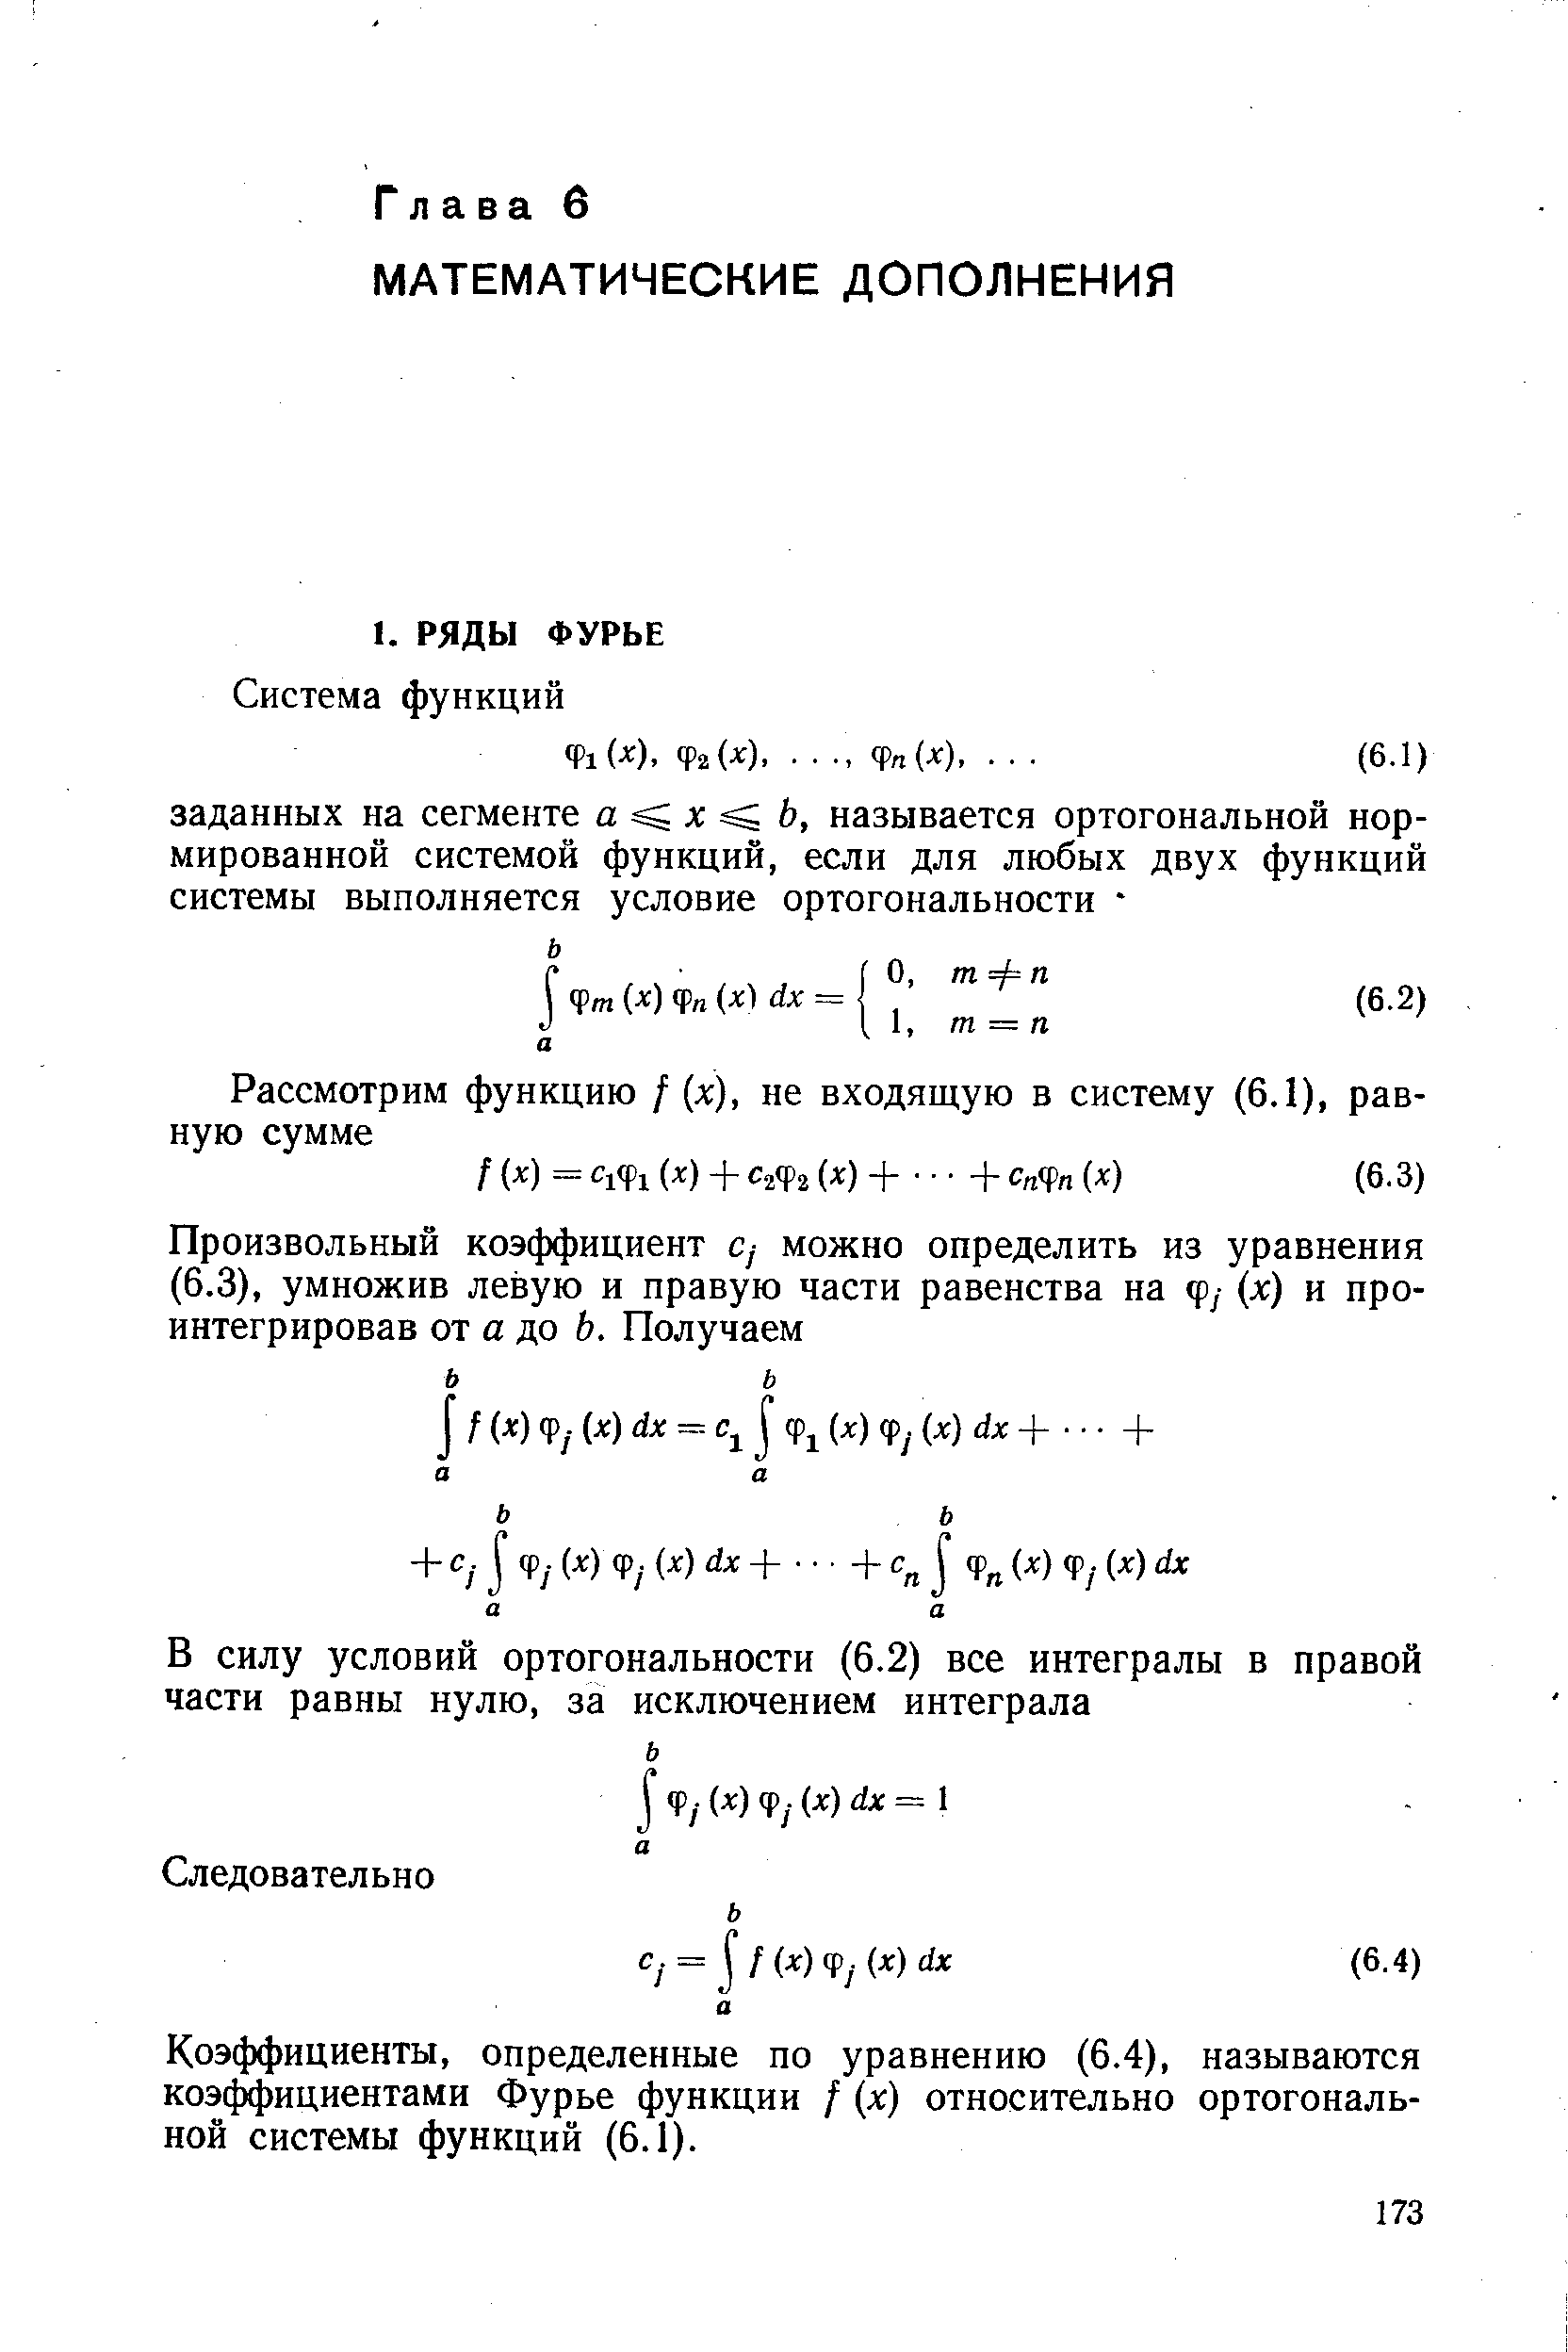 Коэффициенты, определенные по уравнению (6.4), называются коэффициентами Фурье функции / (л ) относительно ортогональной системы функций (6.1).